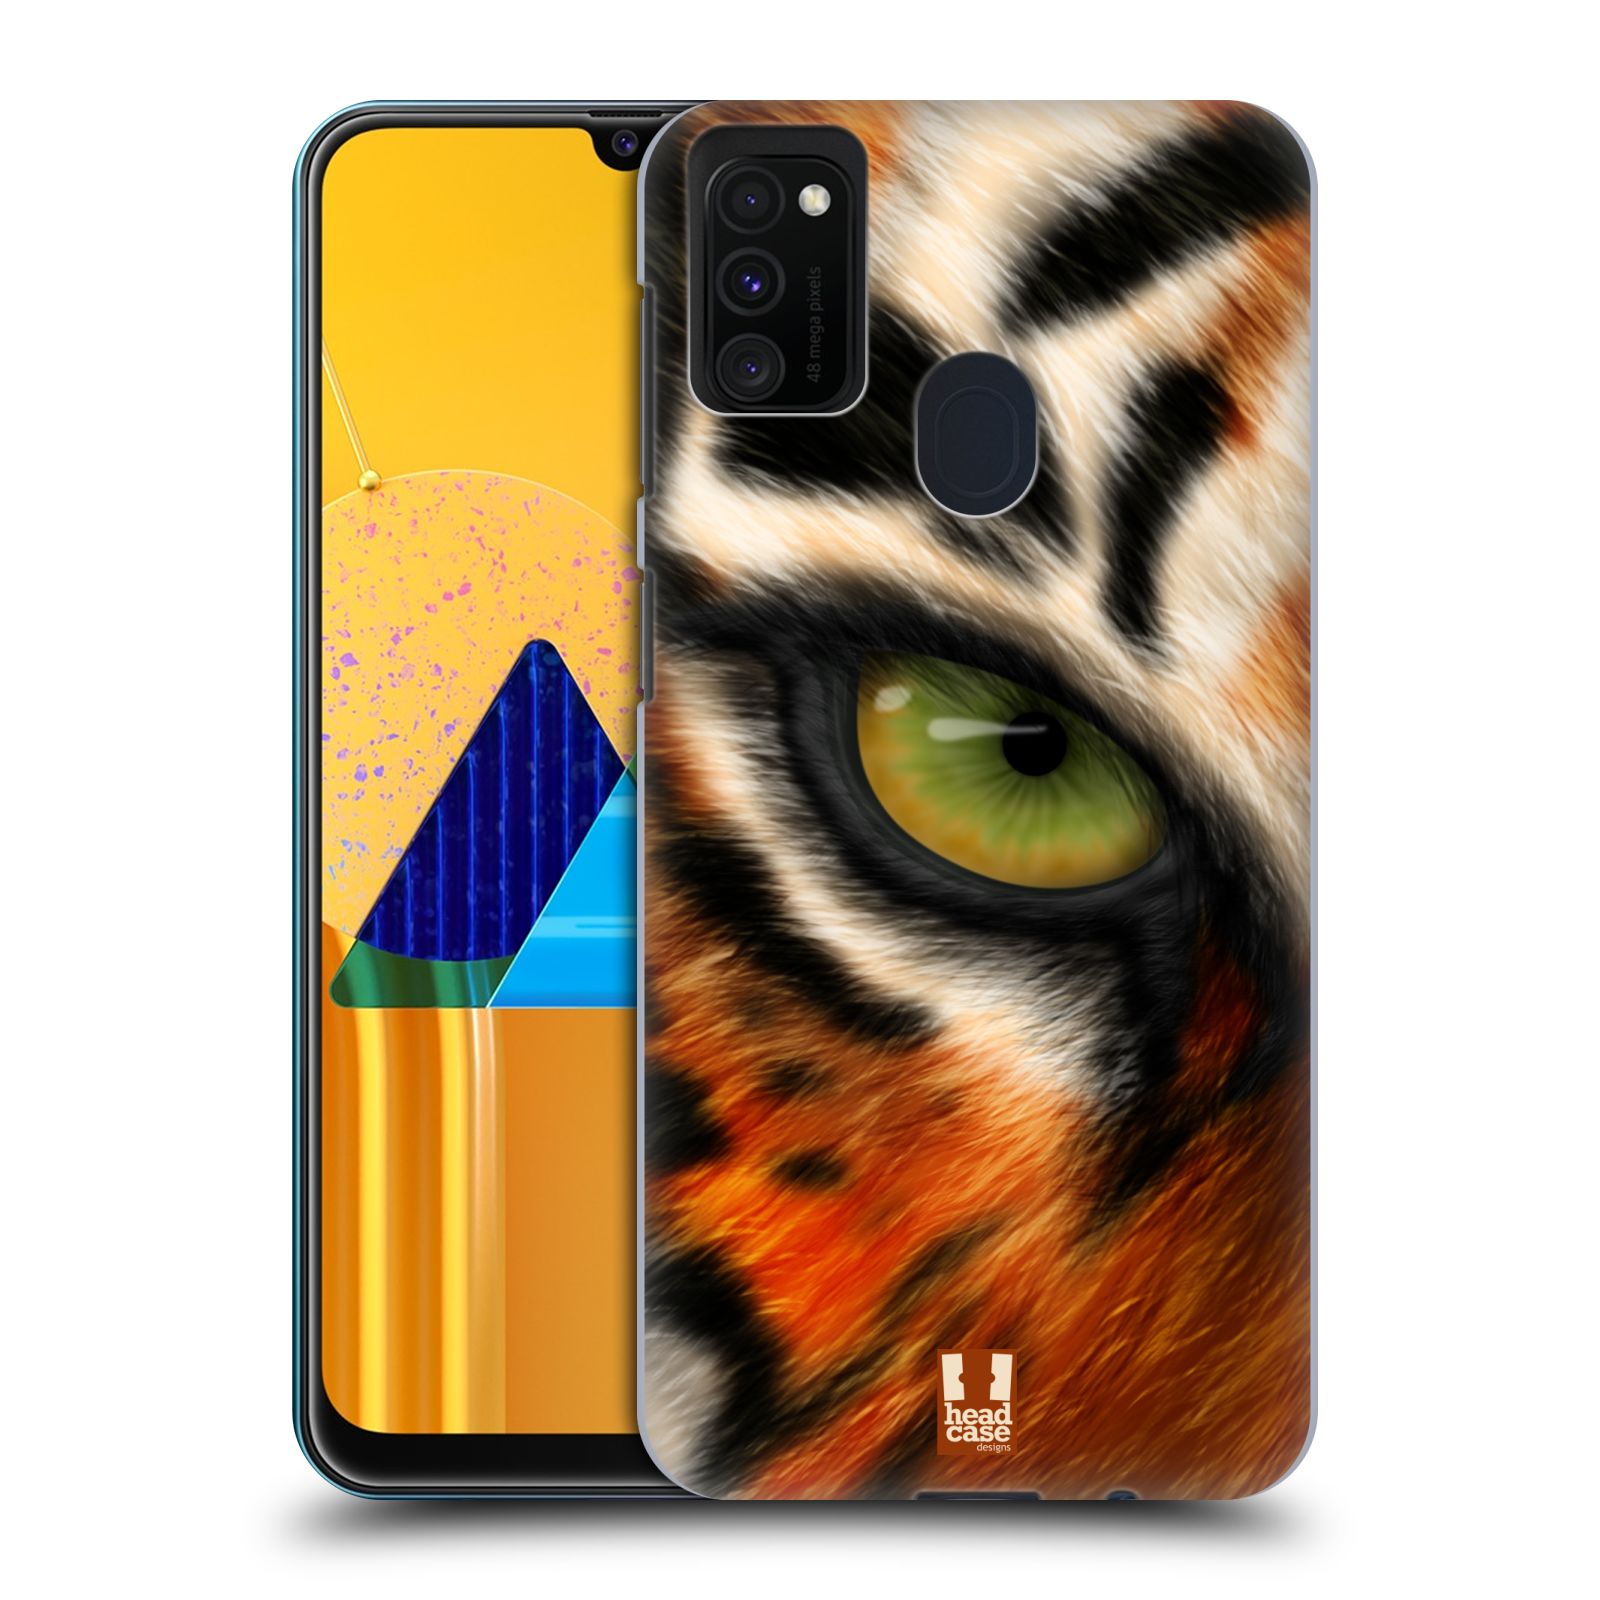 Plastový obal HEAD CASE na mobil Samsung Galaxy M30s vzor pohled zvířete oko tygr